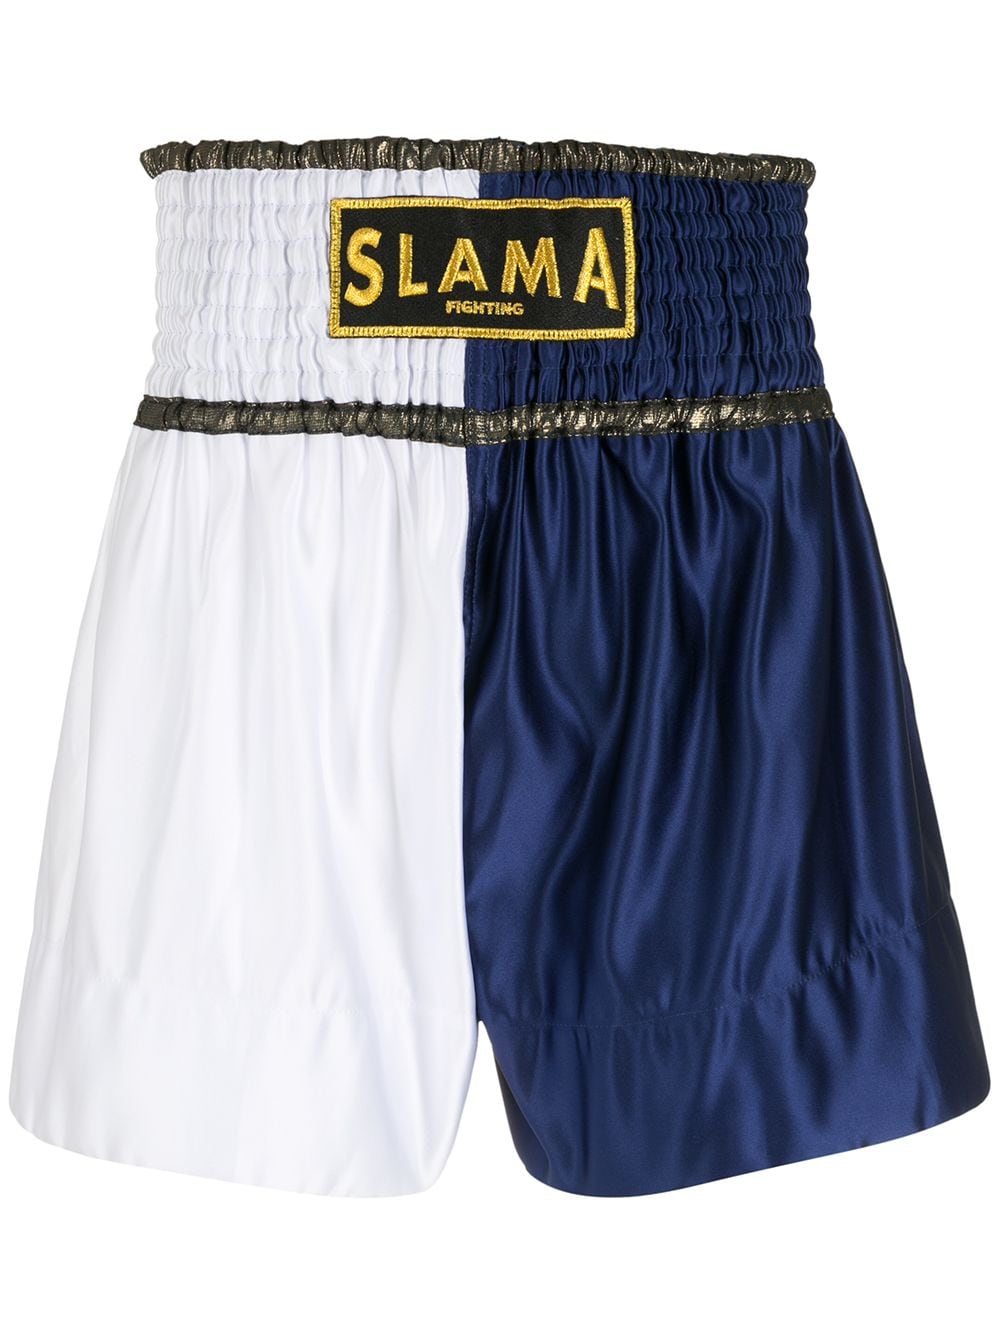 Amir Slama Luta Shorts mit Logo - Blau von Amir Slama